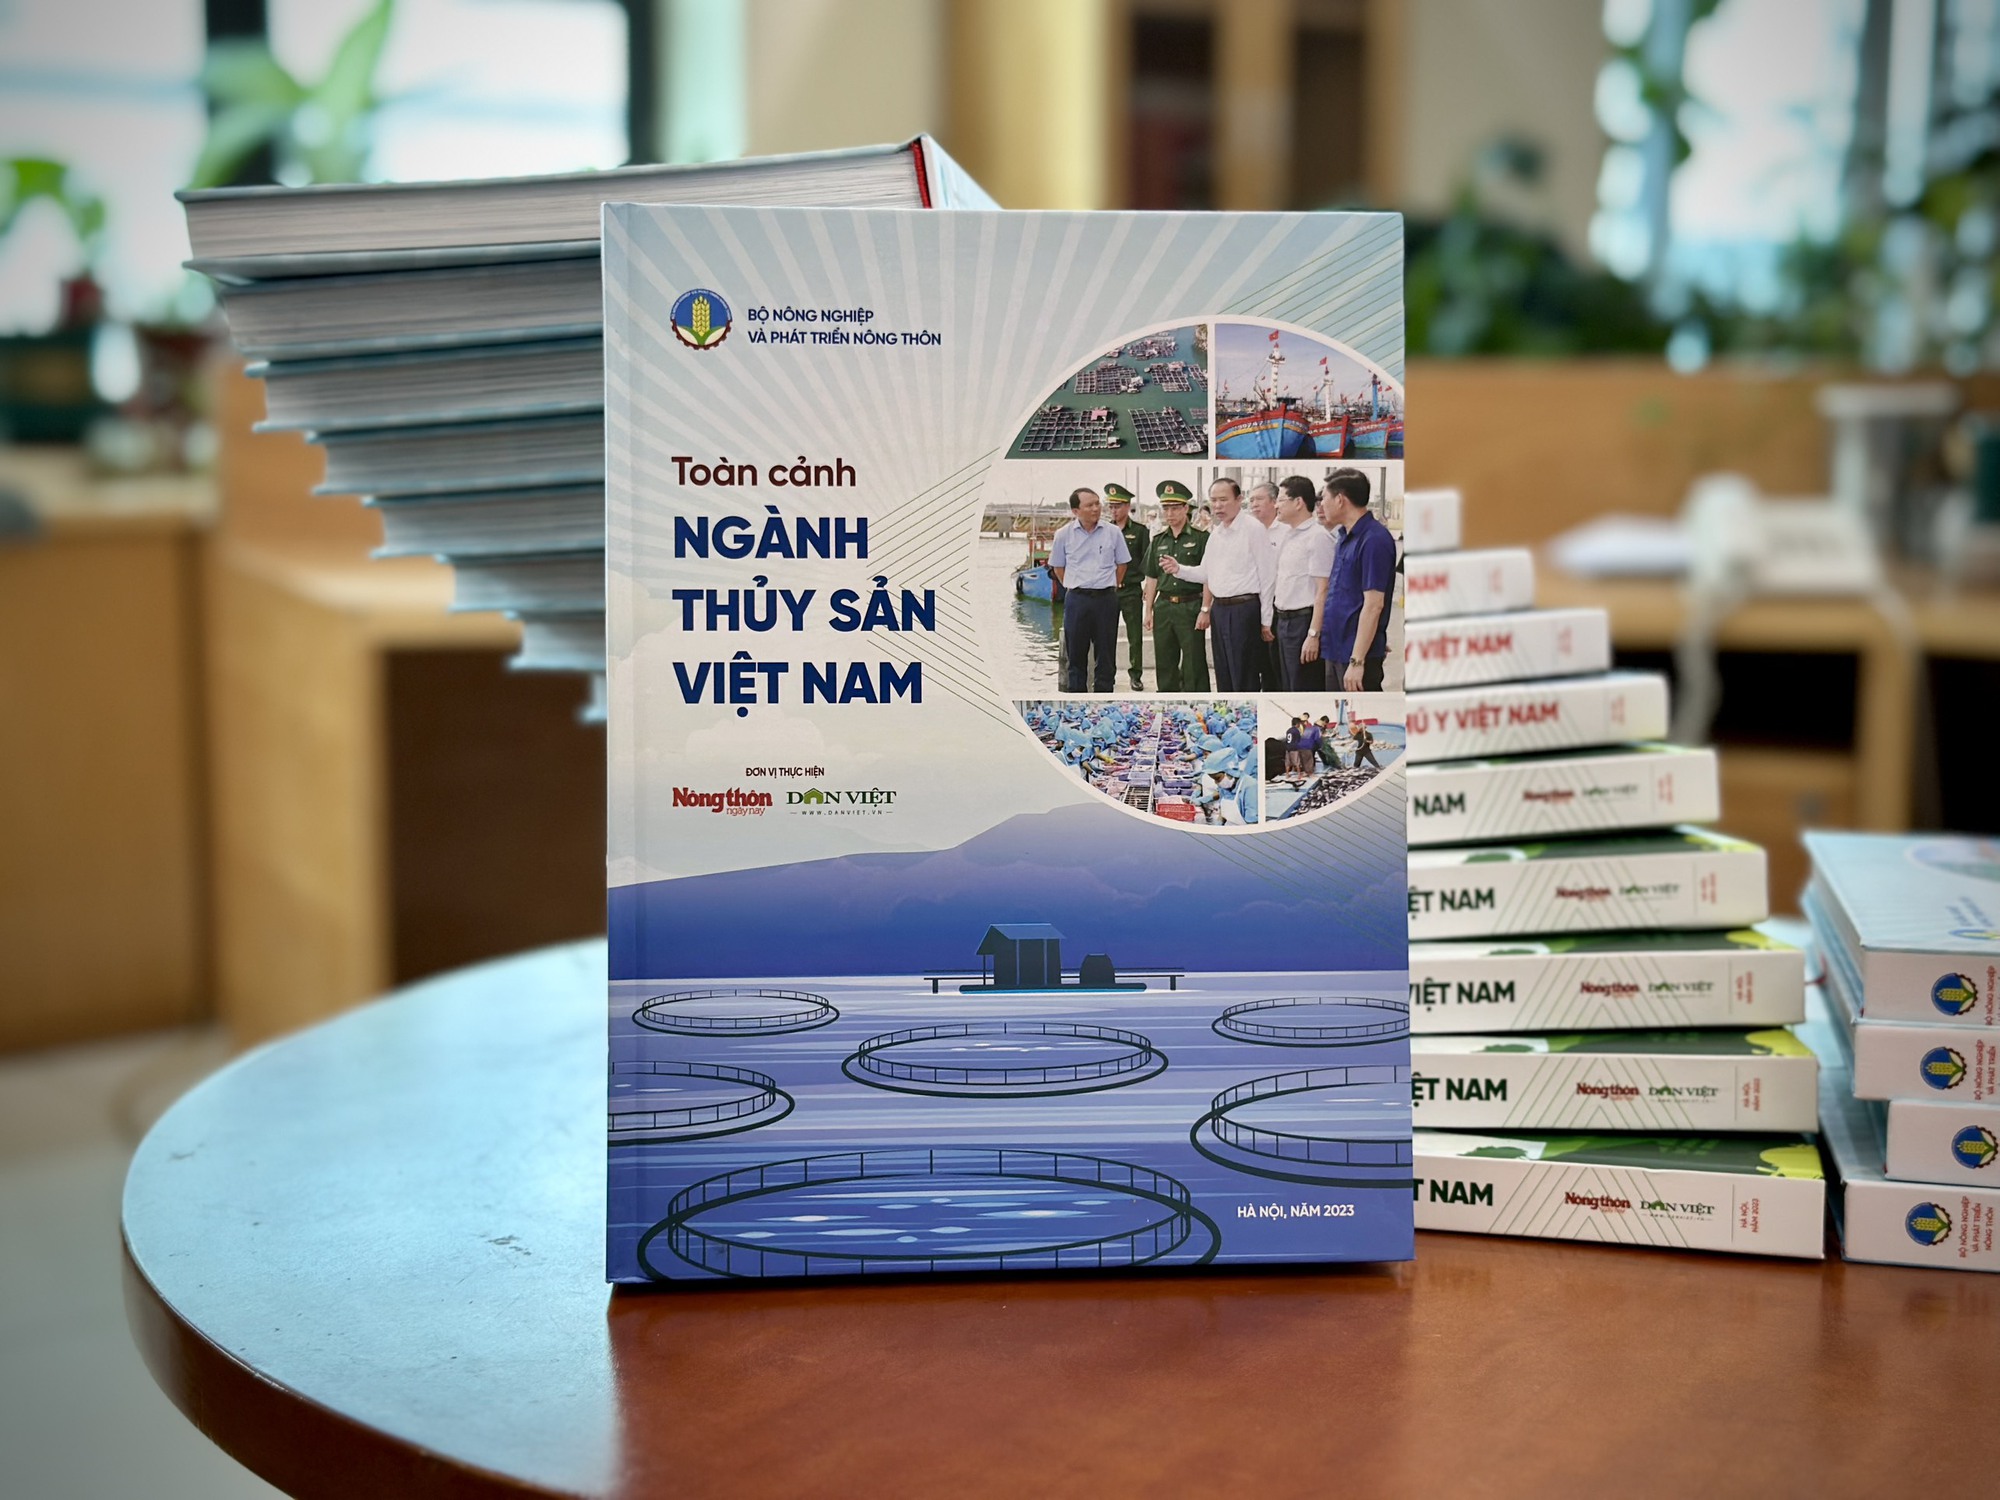 Đặc san Toàn cảnh ngành Thủy sản Việt Nam: Cuốn "bách khoa thư" tổng quan 70 năm của ngành thủy sản- Ảnh 1.